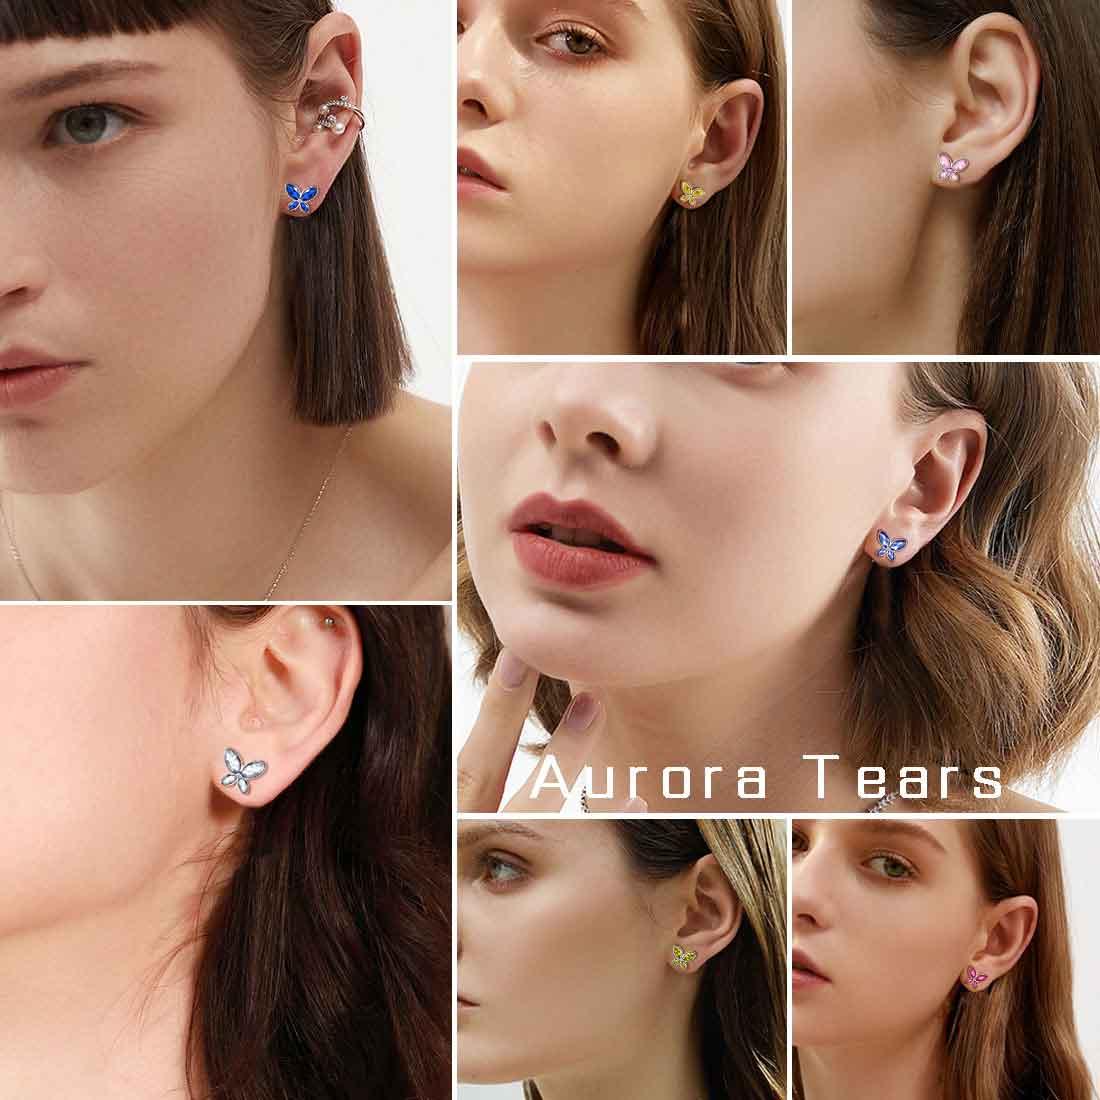 Butterfly Stud Earrings Birthstone September Sapphire - Earrings - Aurora Tears